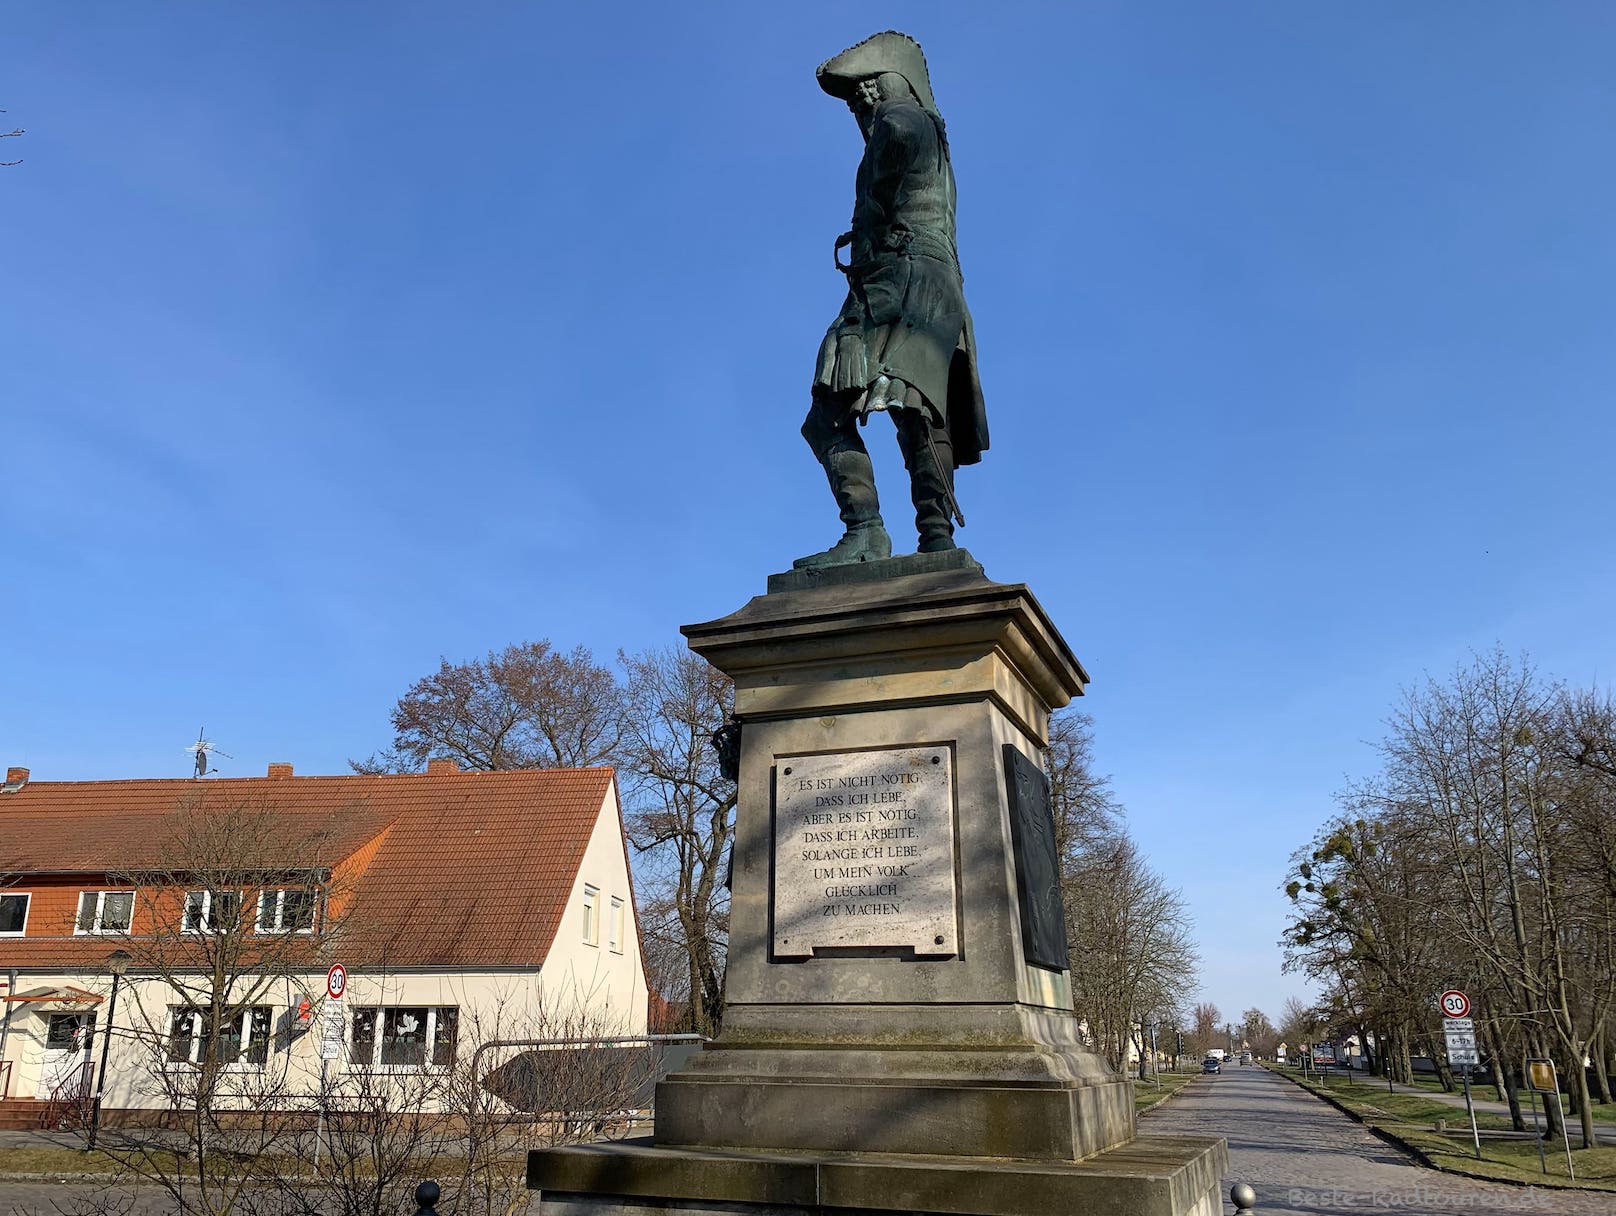 Denkmal von Friedrich II (Friedrich der Große, Alter Fritz) in Neutrebbin, Foto von der Seite